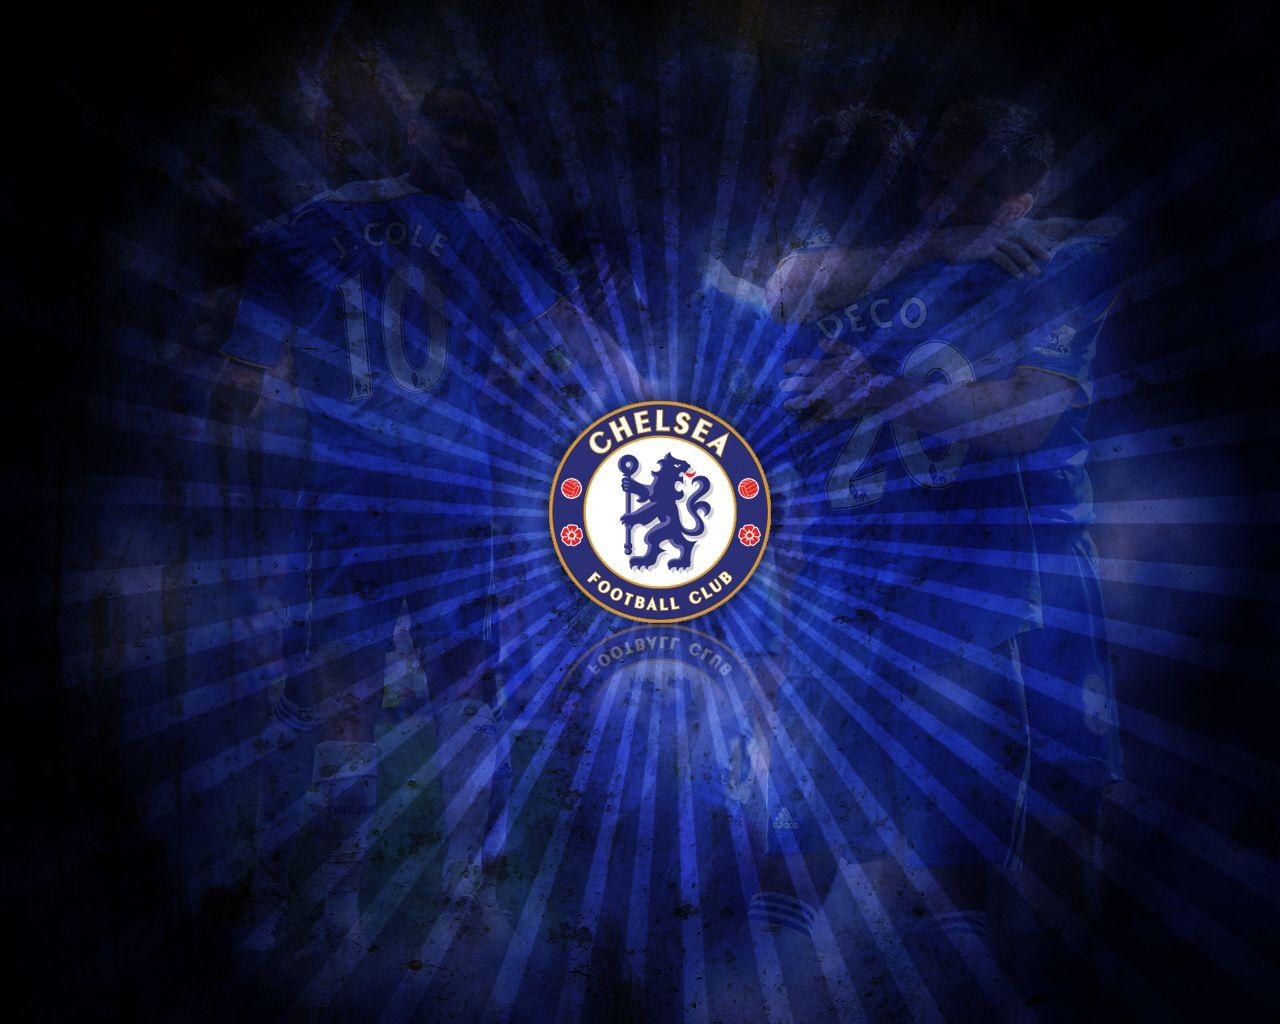 Chelsea football club flag Football Infofootball.org